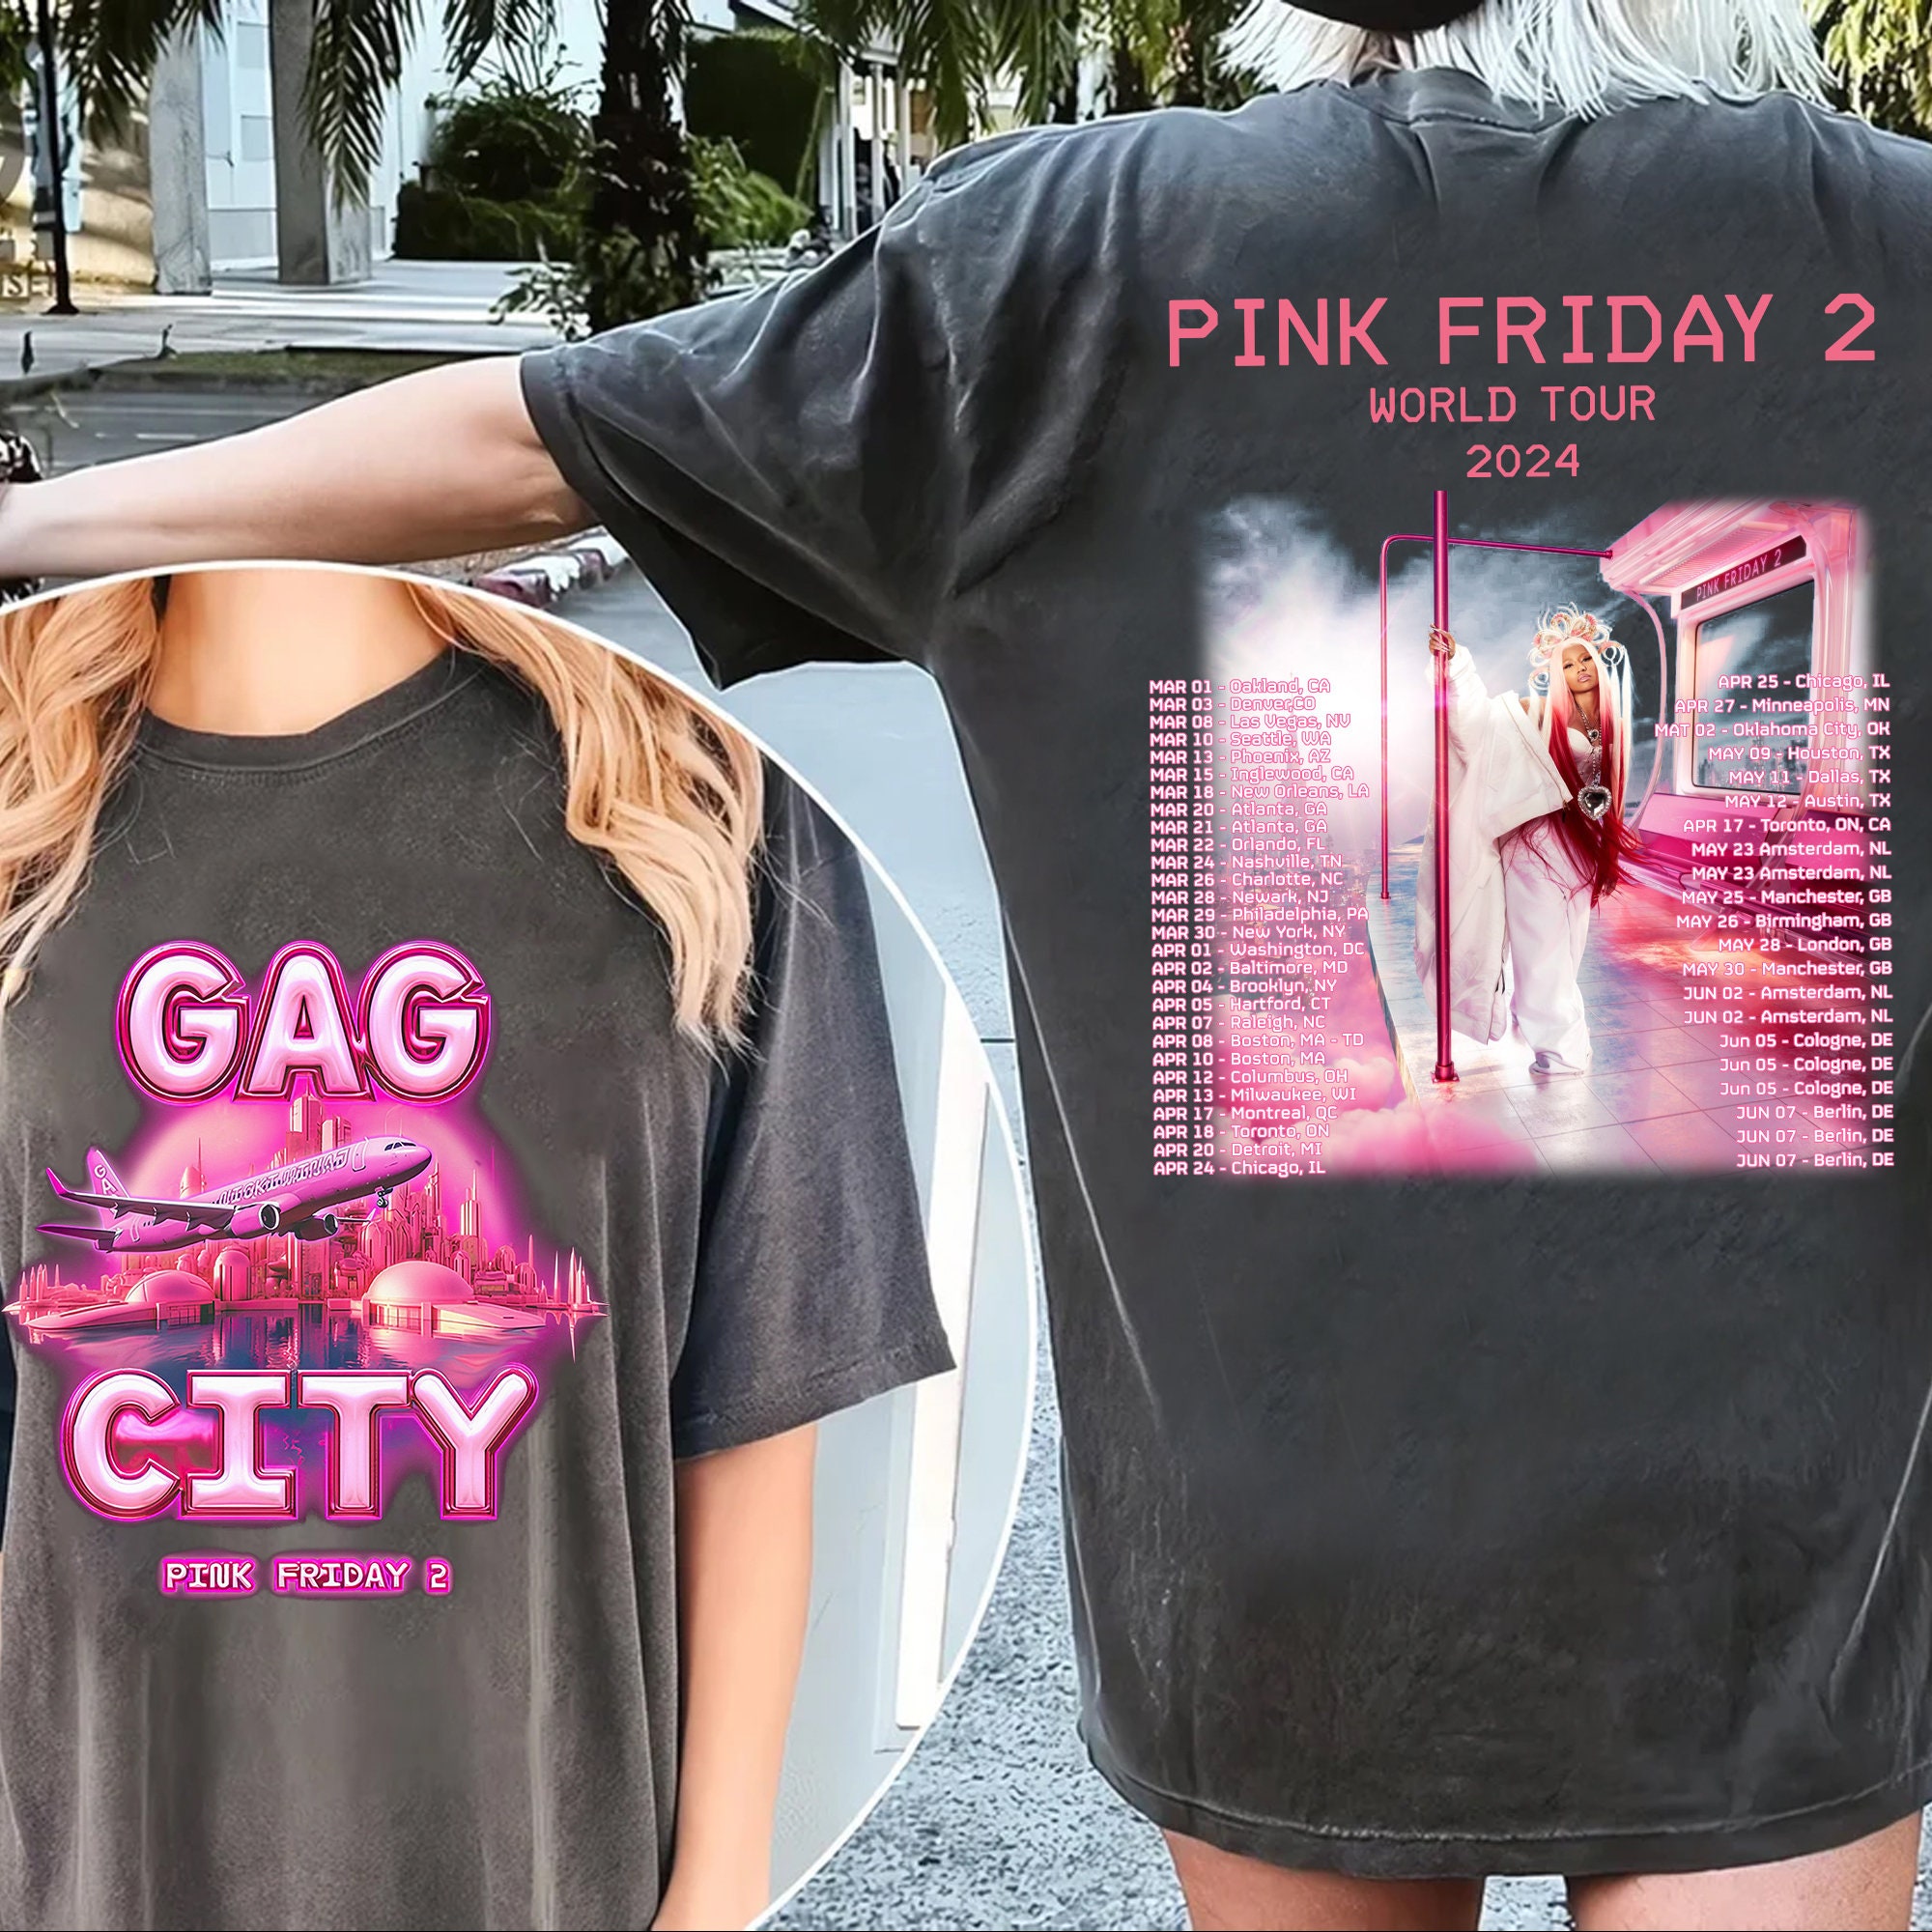 Nicki Minaj 2 Sides Vintage Shirt, Retro Pink Friday Airbrush Tee